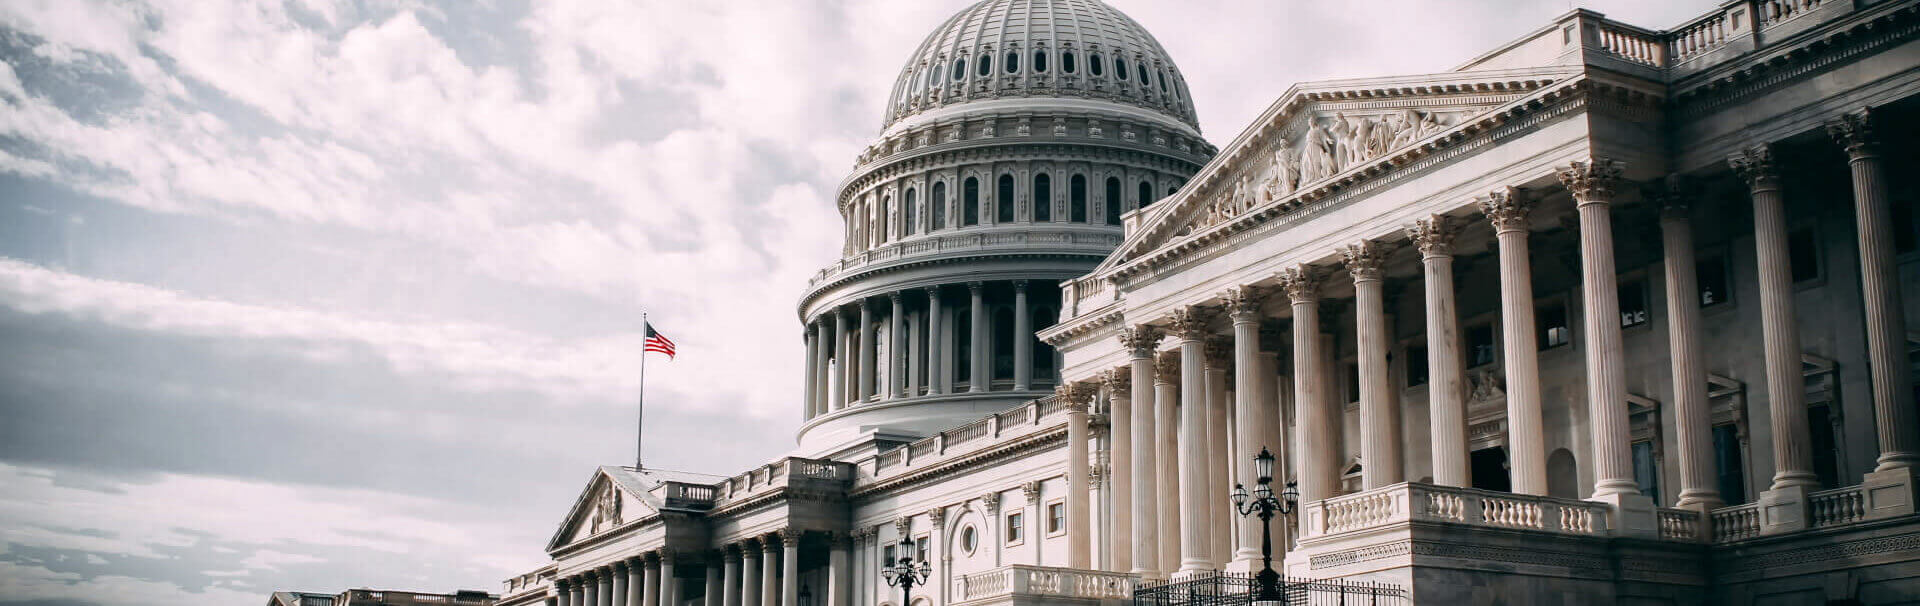 Washington D.C. Capitol building